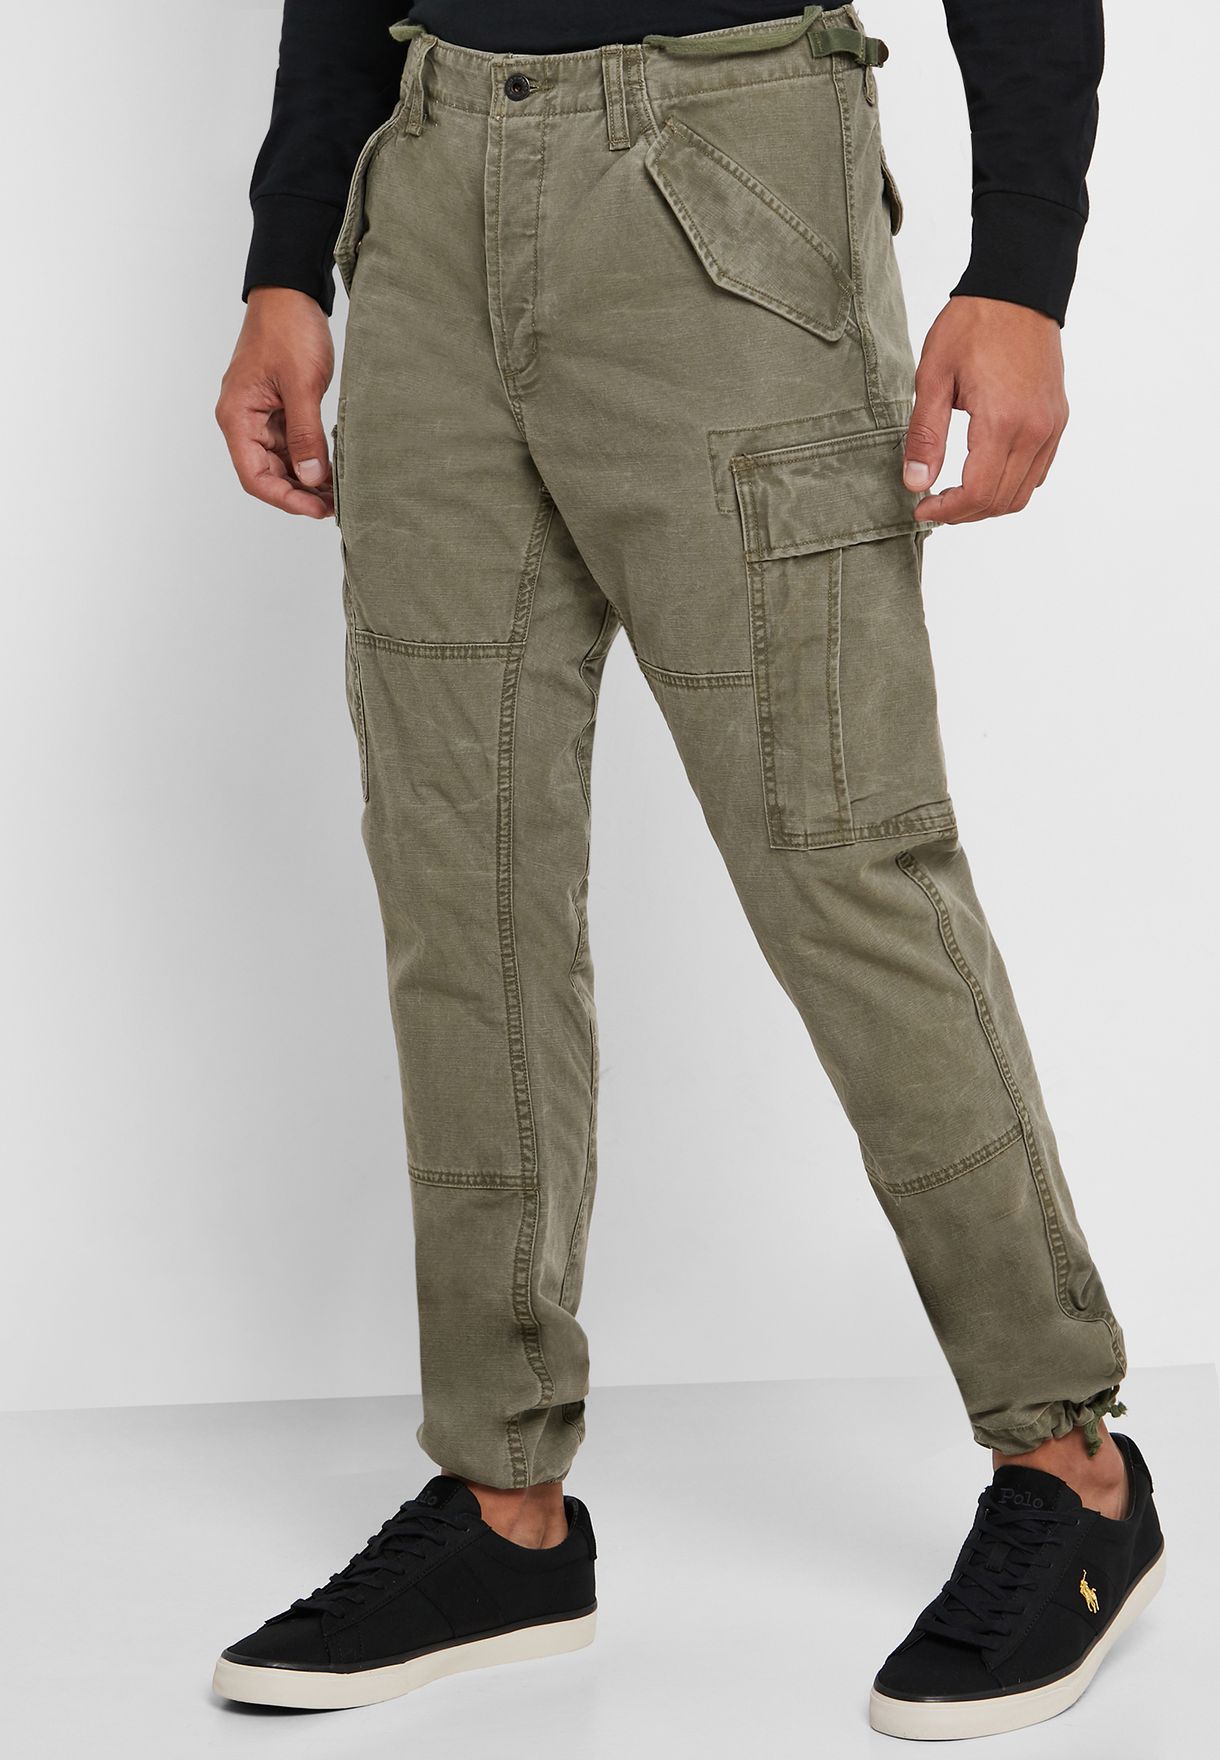 polo khaki cargo pants